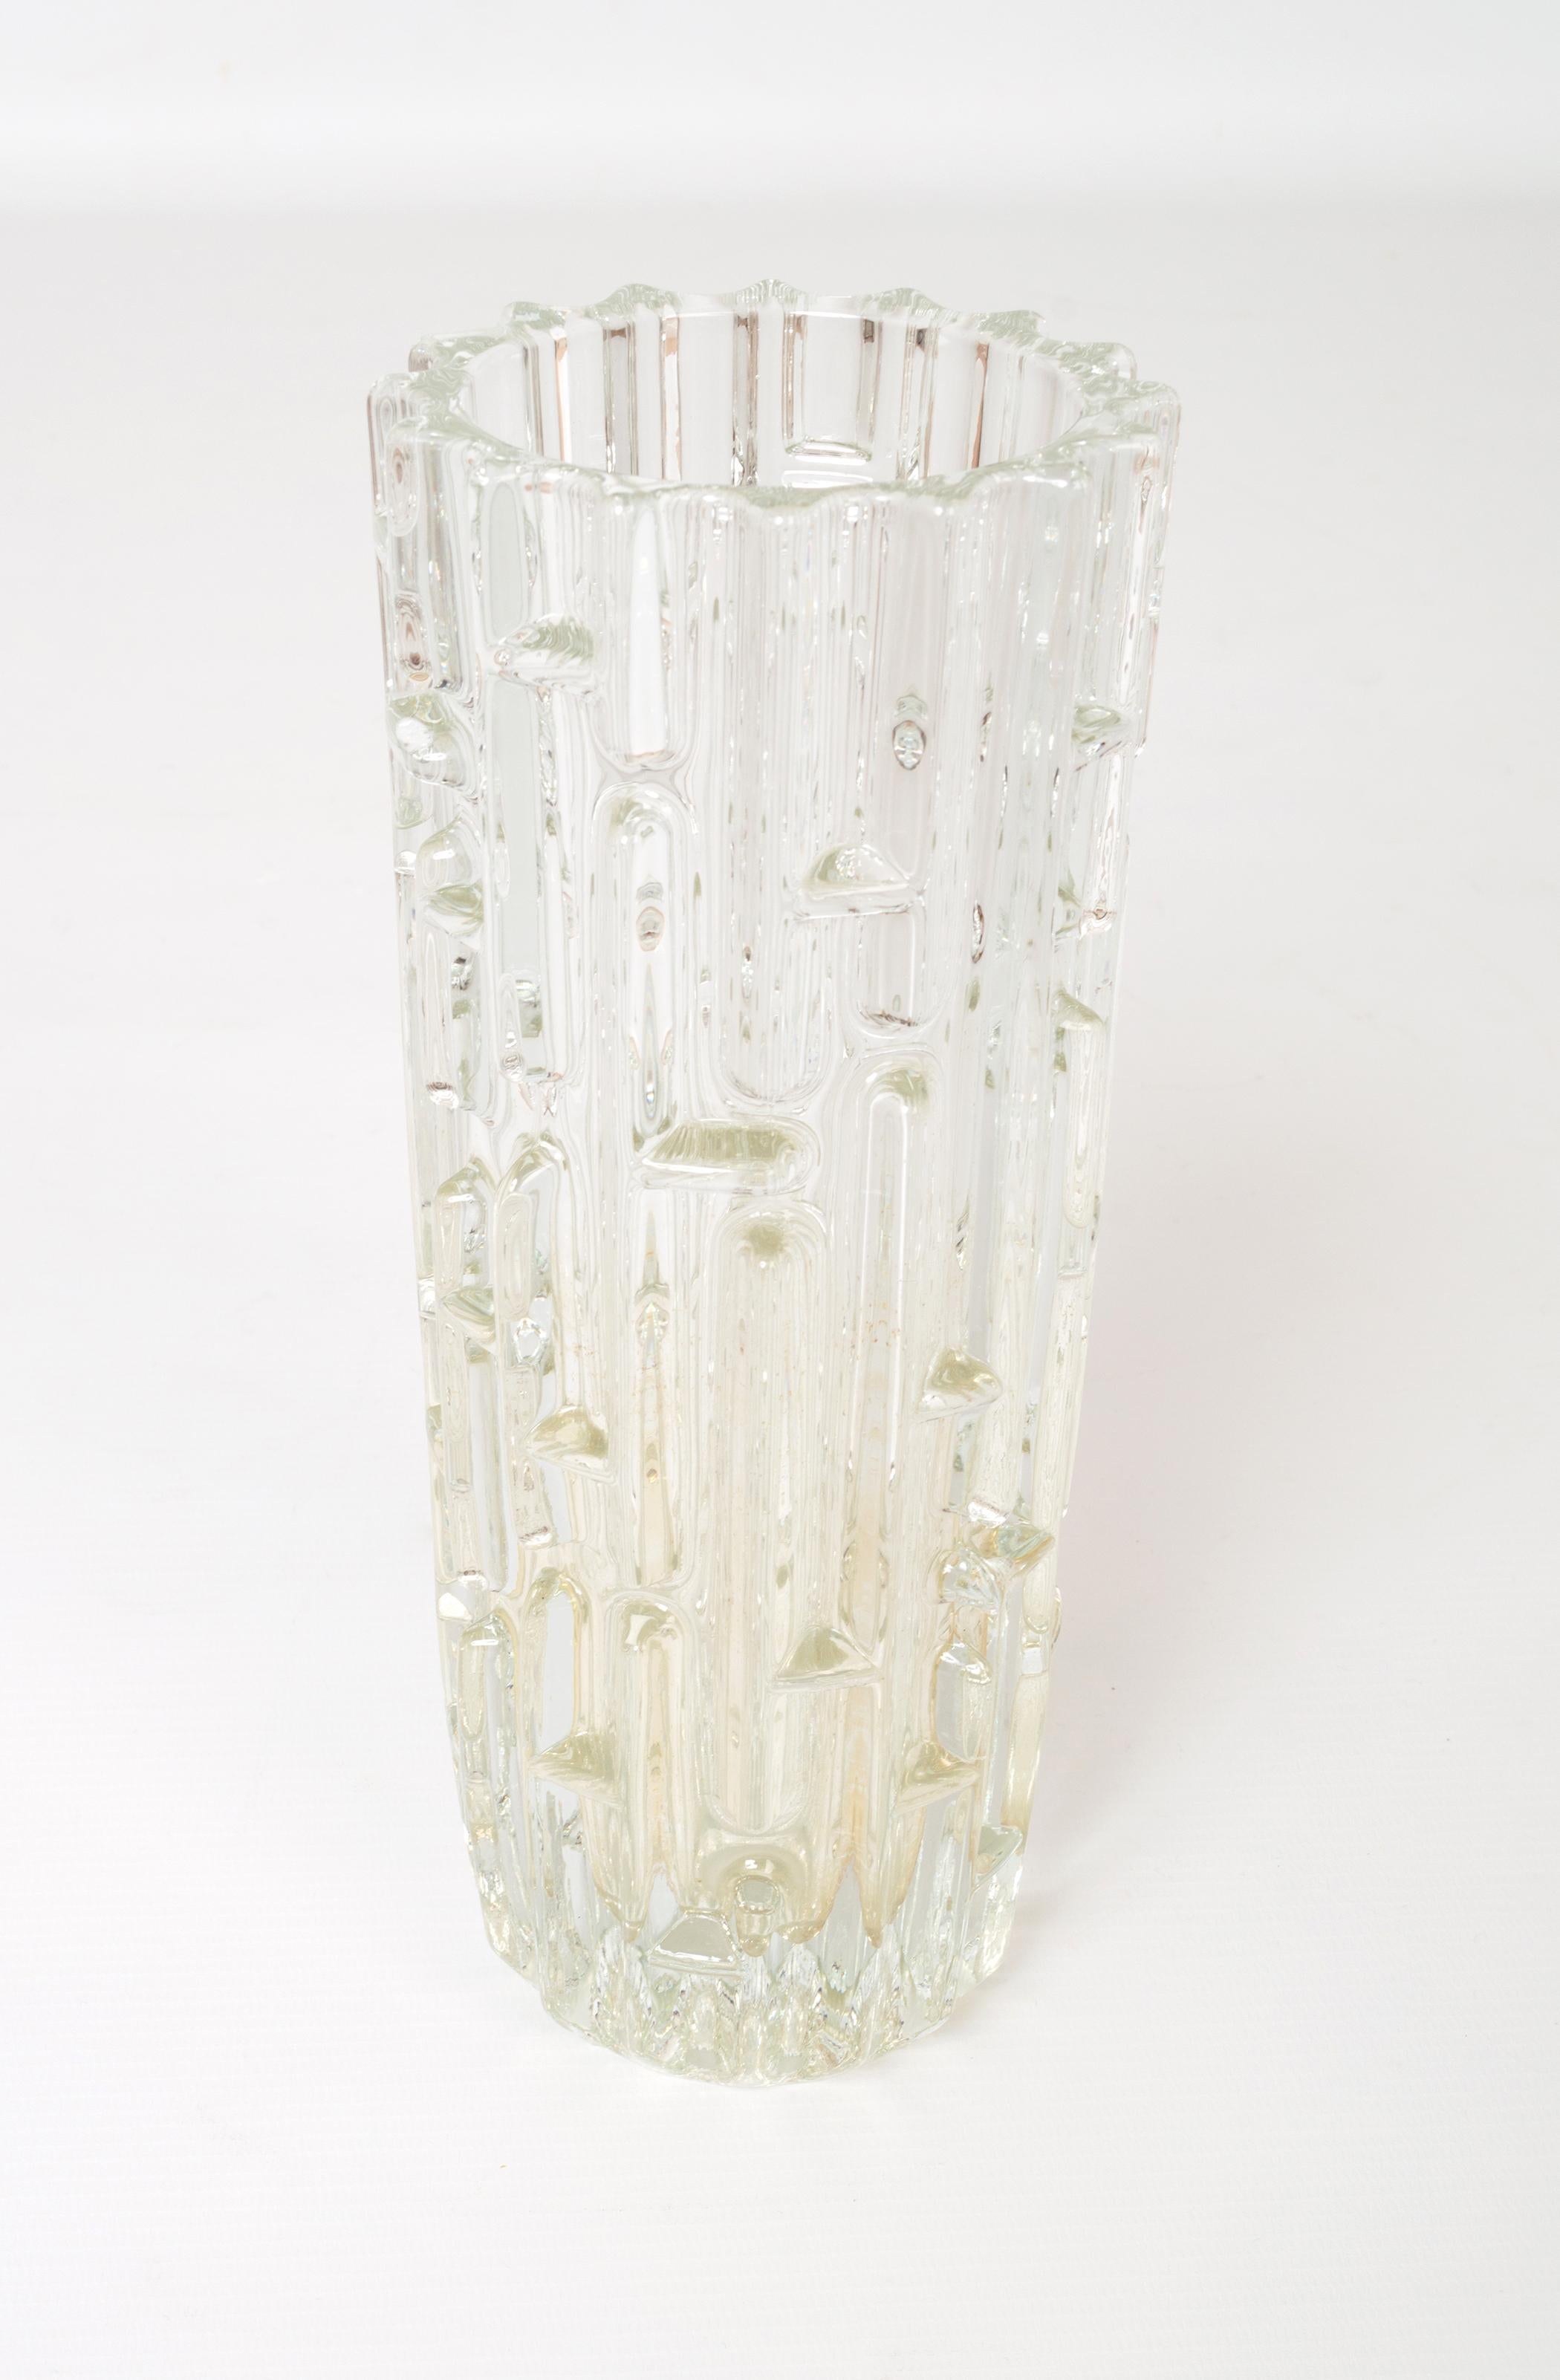 Vase en verre géométrique clair tchèque du milieu du siècle dernier, conçu par Frantisek Vizner, 1965.

Présenté en excellent état, sans éclats ni fissures.